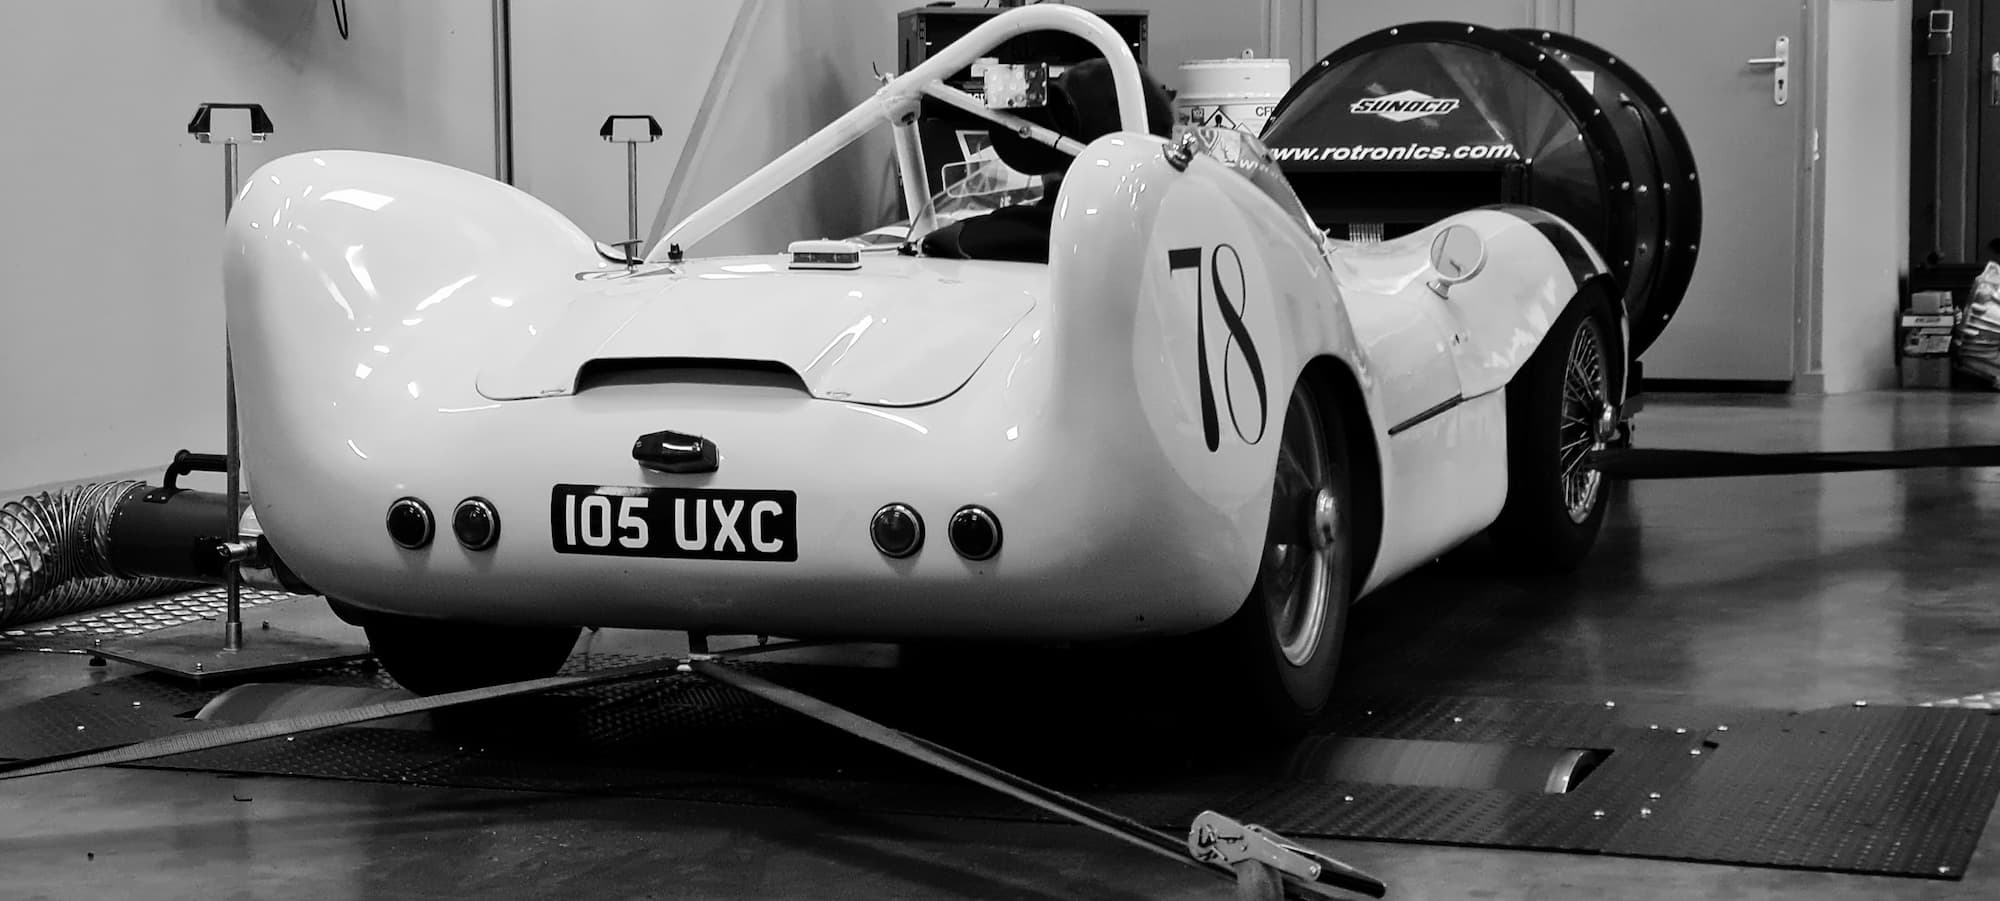 Garage des Damiers - Banc de puissance - Rotronics - Réglage moteur - Historic racing - British racing - Classic cars - Lotus XI